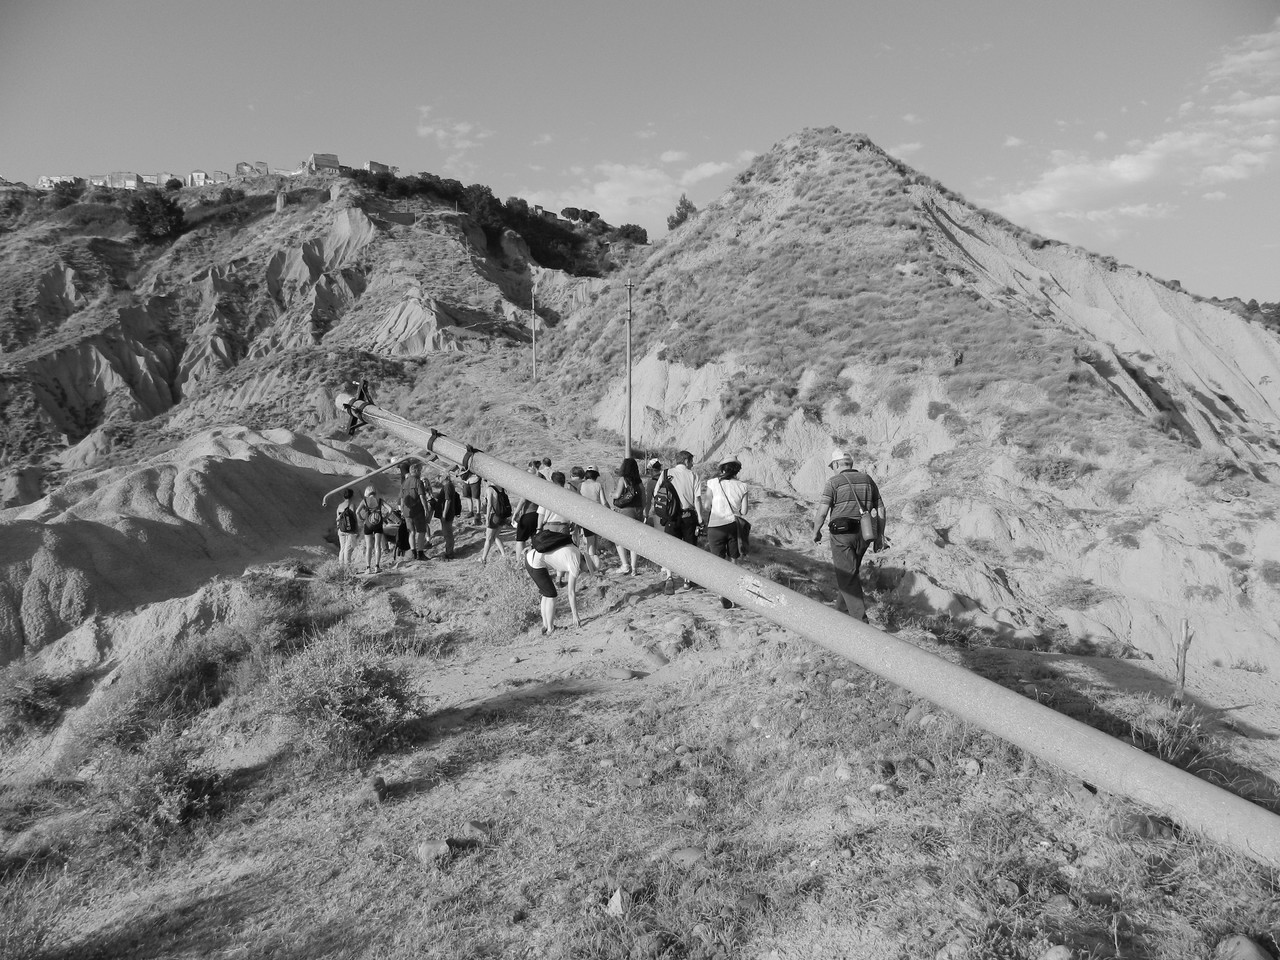 Escursione Appiett u mulin 2012 con un gruppo di turisti austriaci